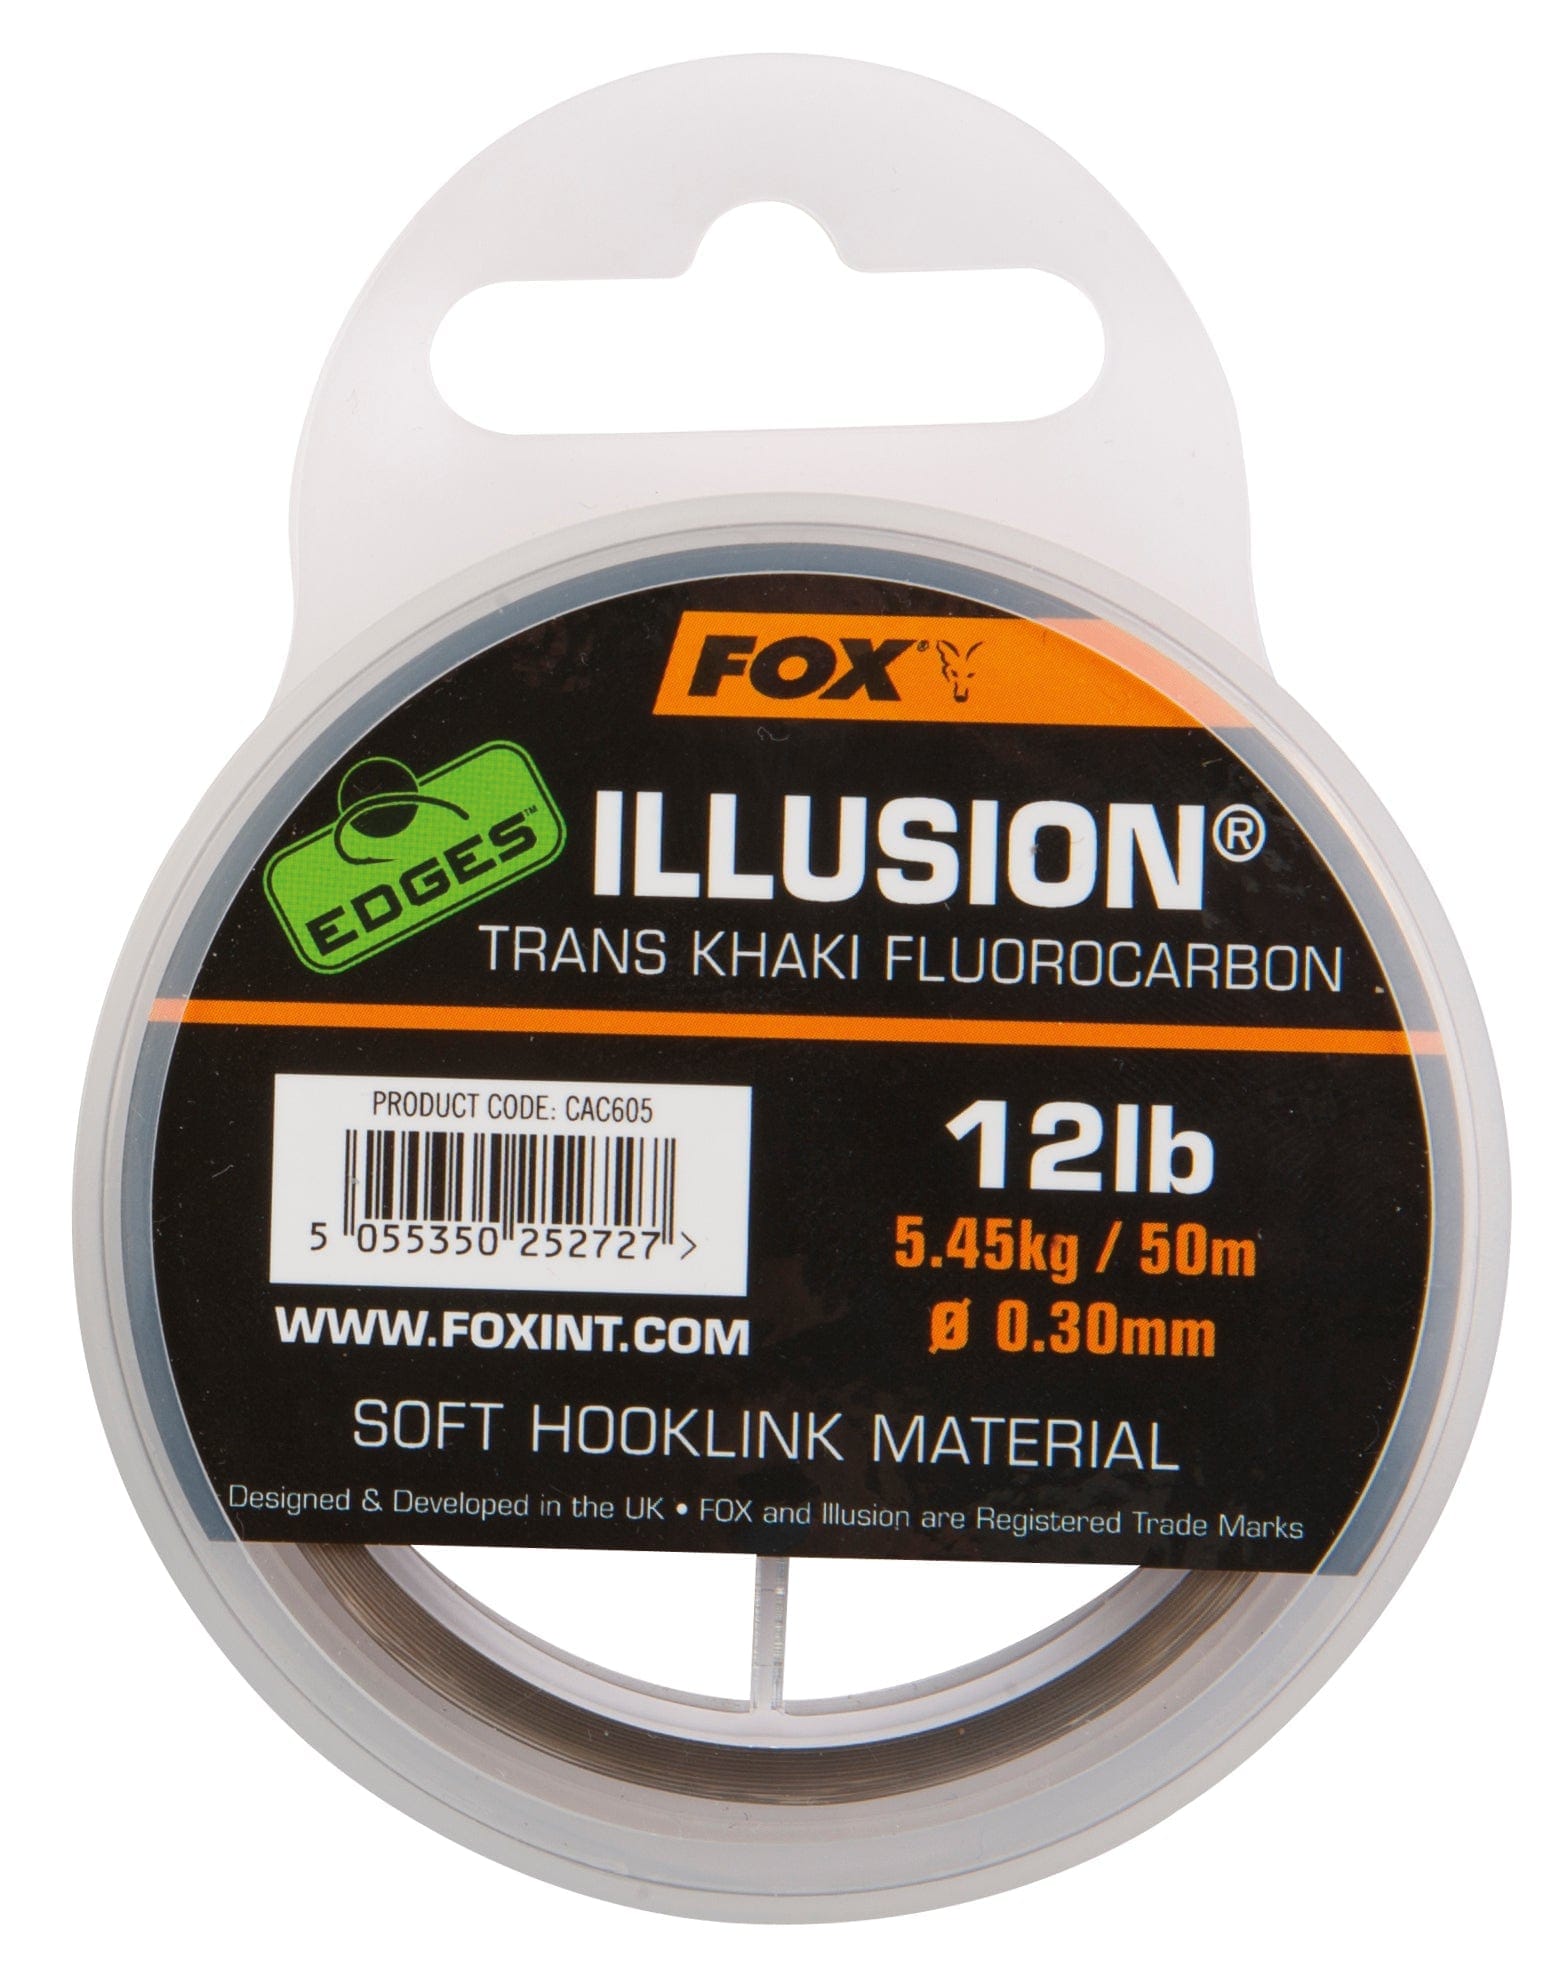 FOX EDGES Illusion Soft Hooklink Trans Khaki Fluorocarbon.